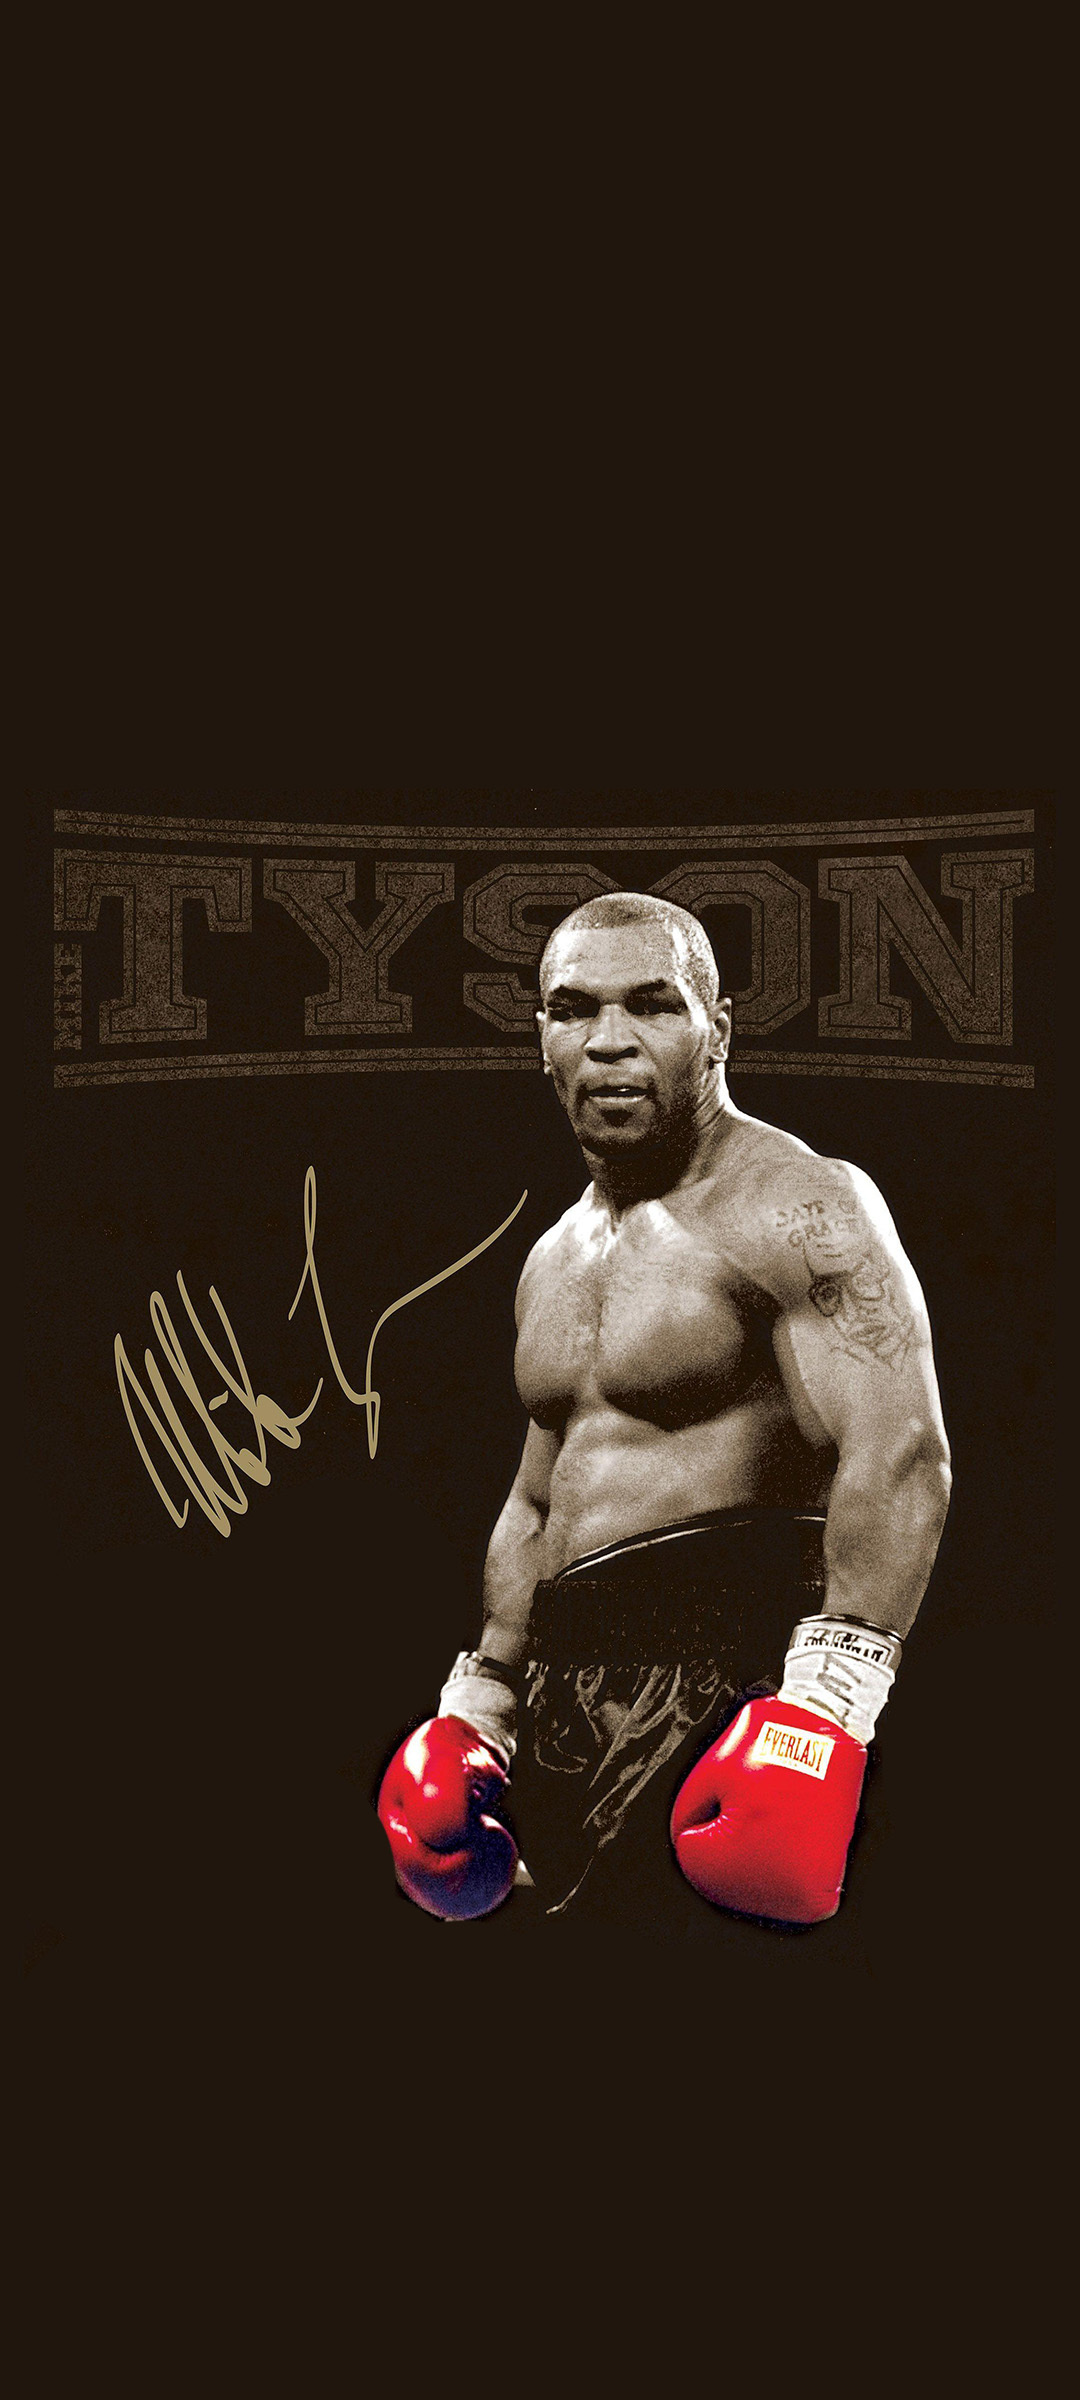 迈克·泰森（Mike Tyson）——拳王手机壁纸_世界